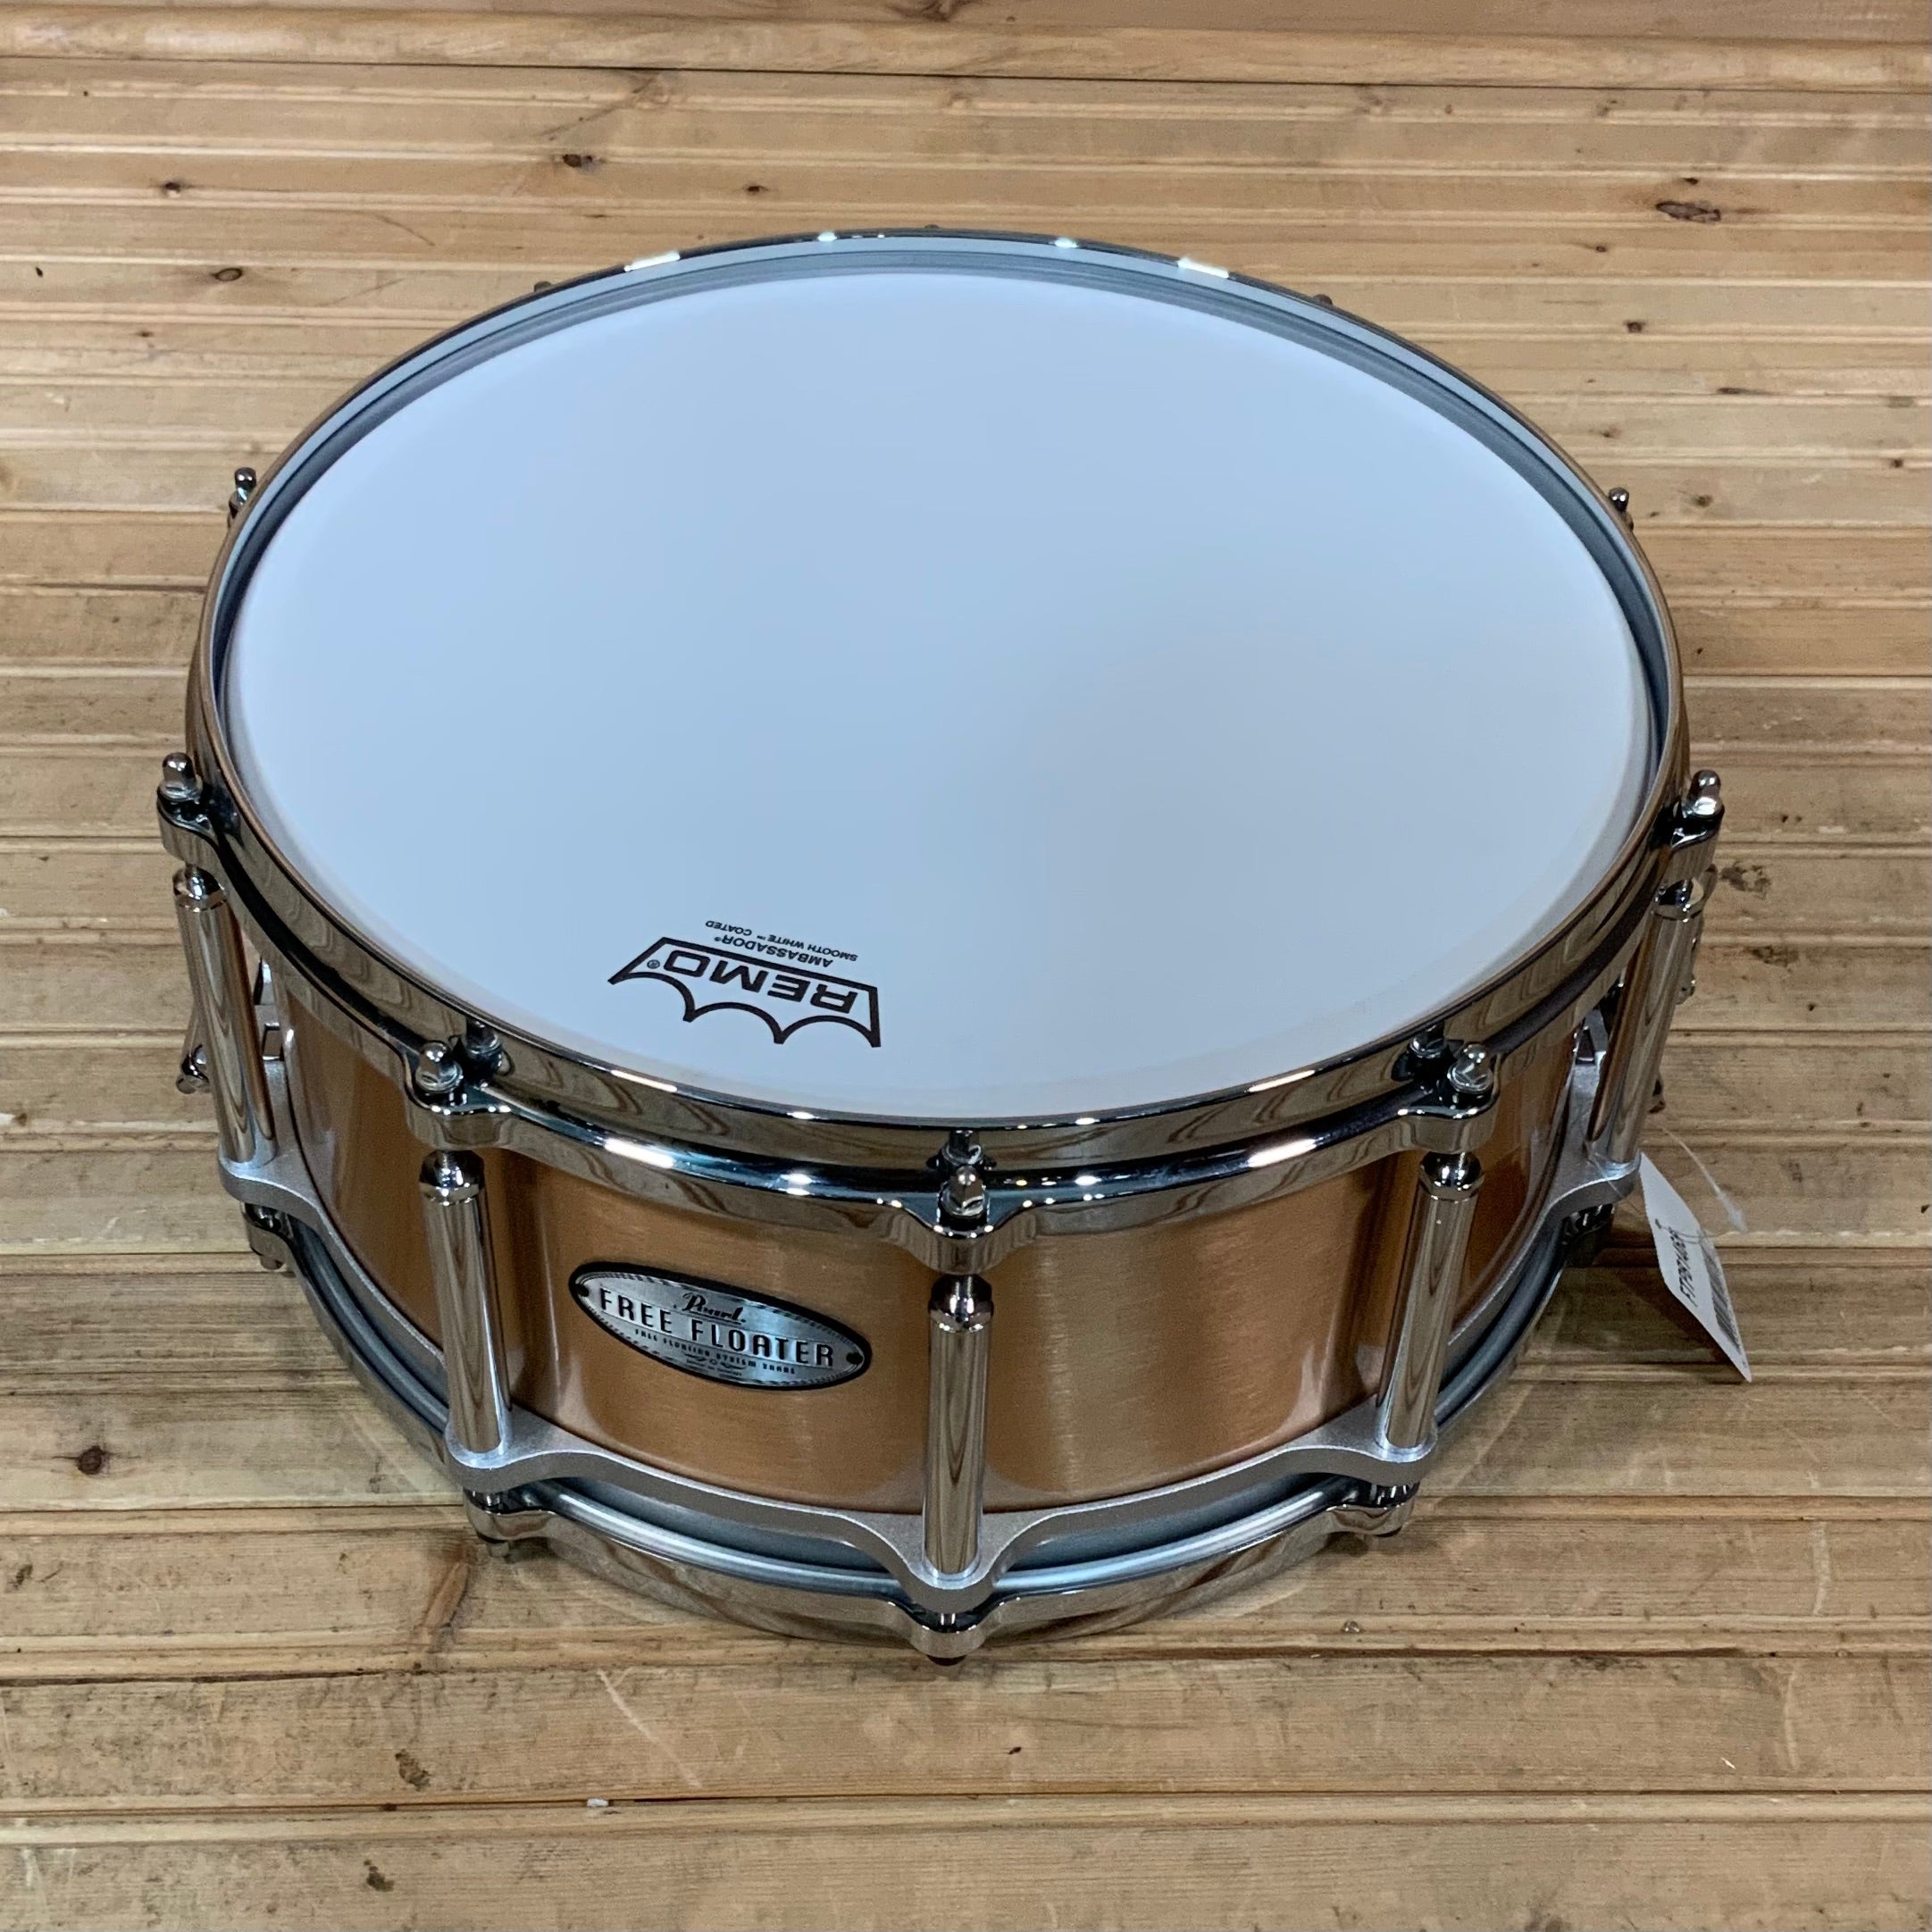 Pearl Maple SensiTone Premium Snare Drum 6.5x14 